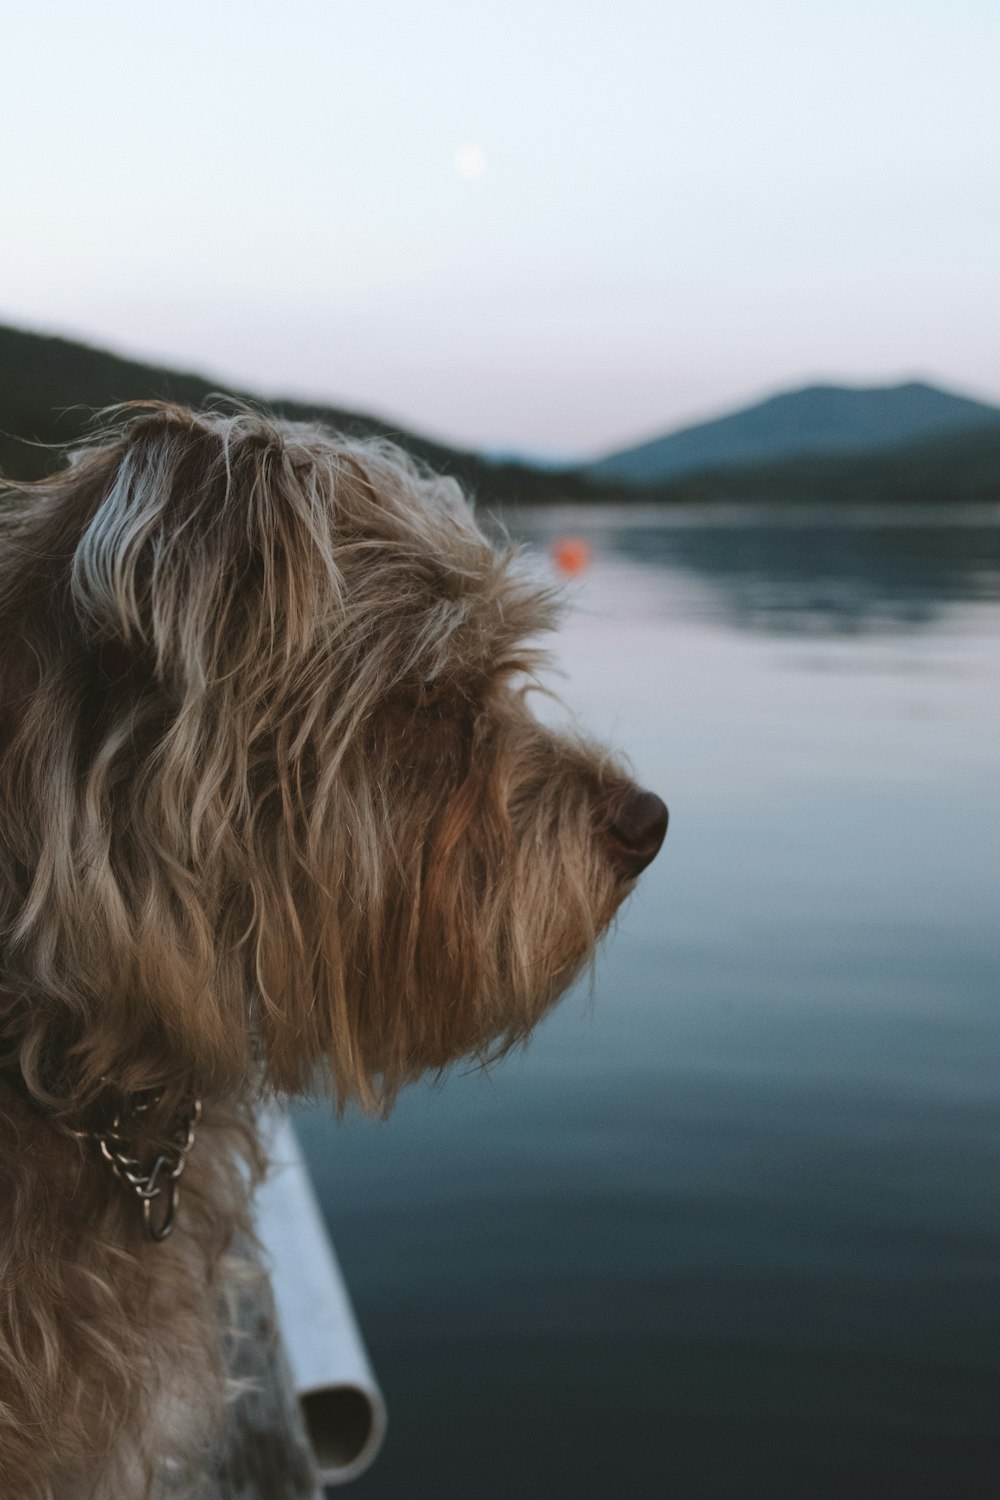 cane marrone chiaro a pelo lungo vicino a uno specchio d'acqua